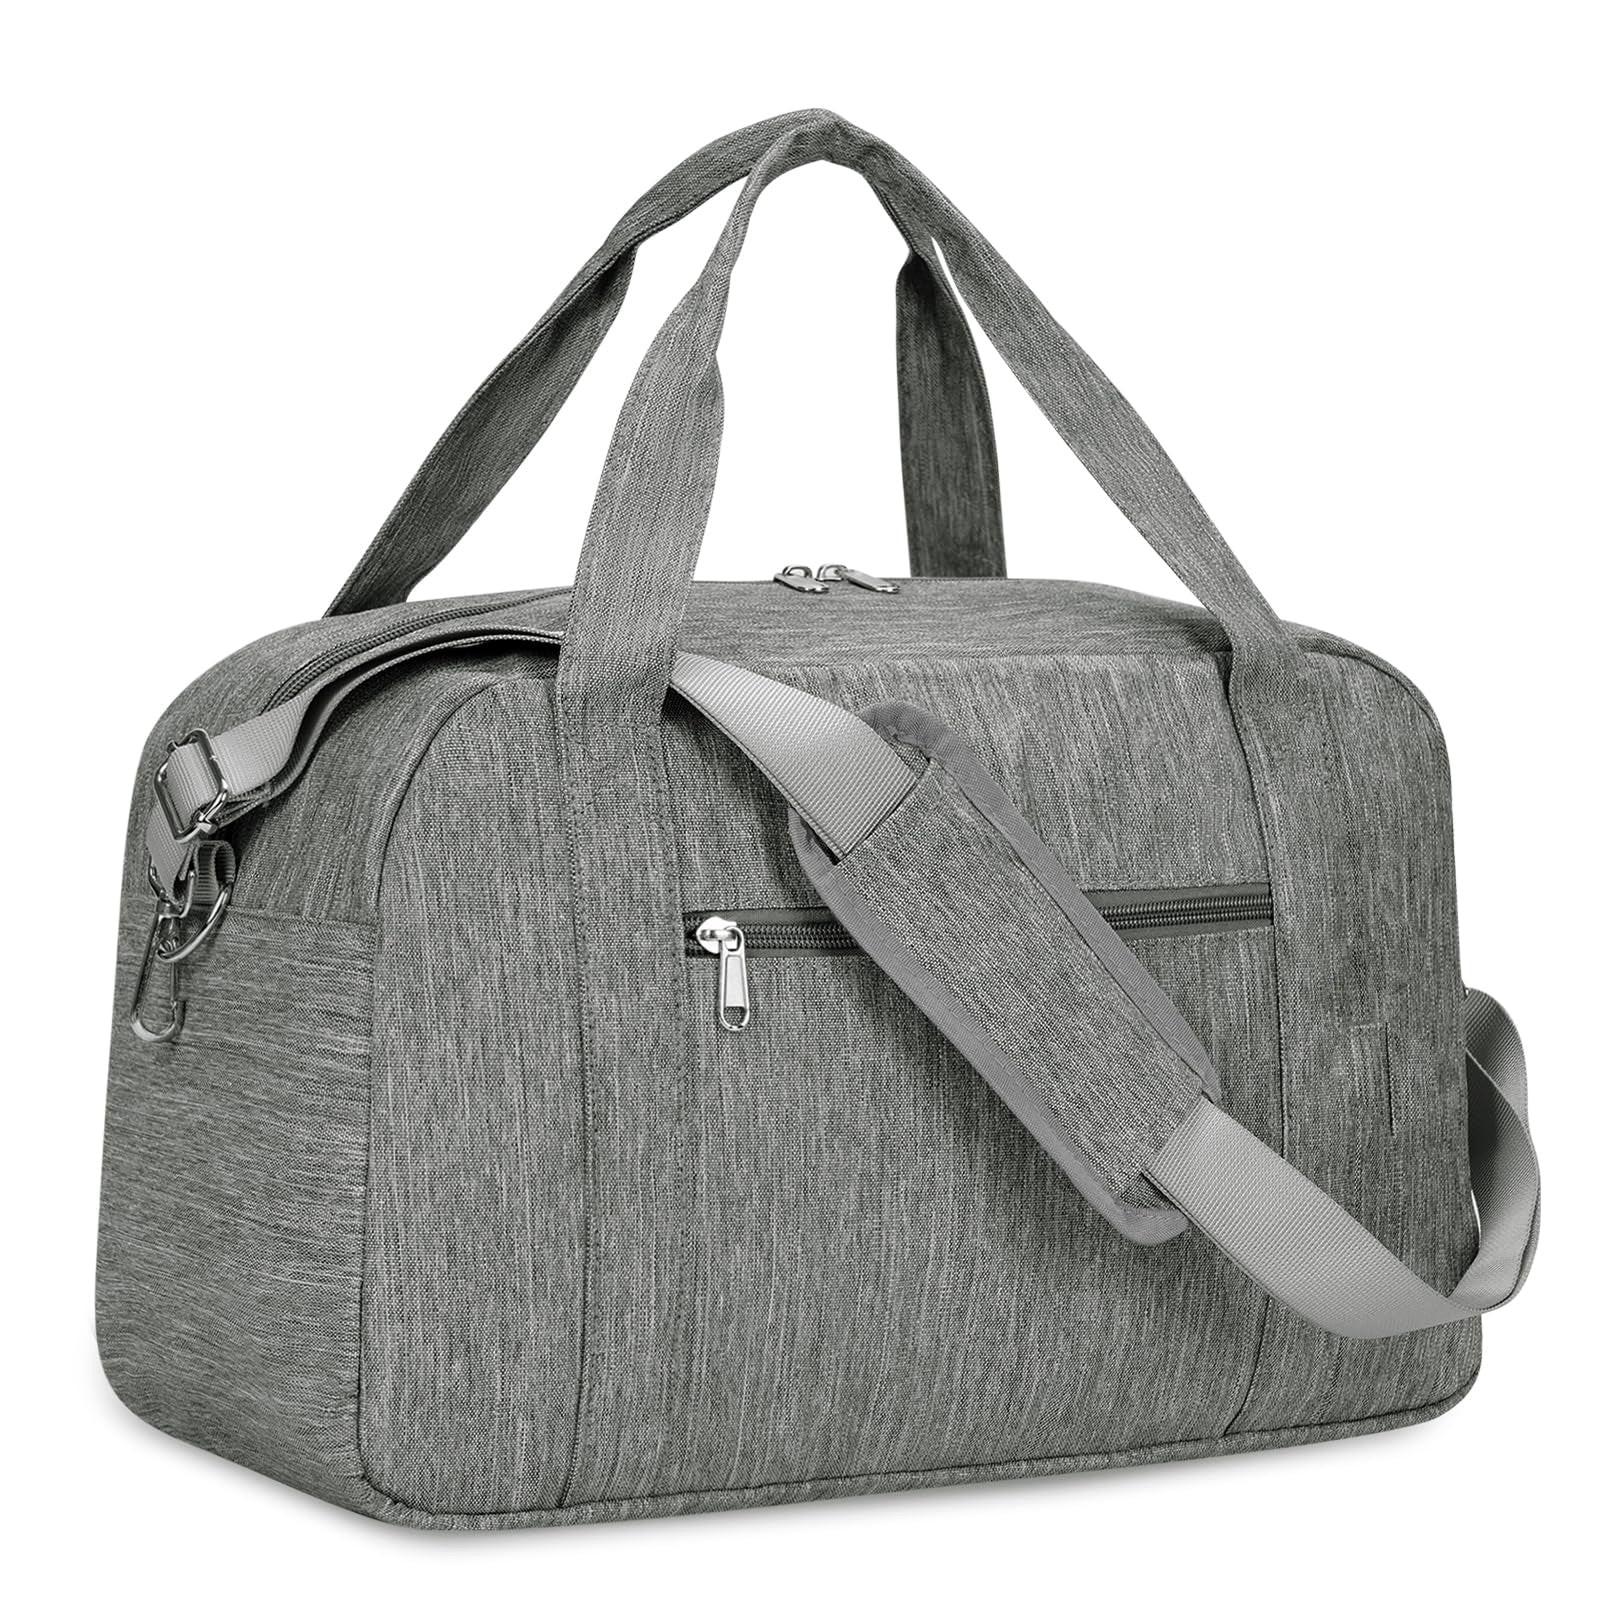 Reisetasche Sporttasche Ryanair Handgepäck Tasche Weekender Bag Unisex Grau ONE SIZE von Only-bags.store